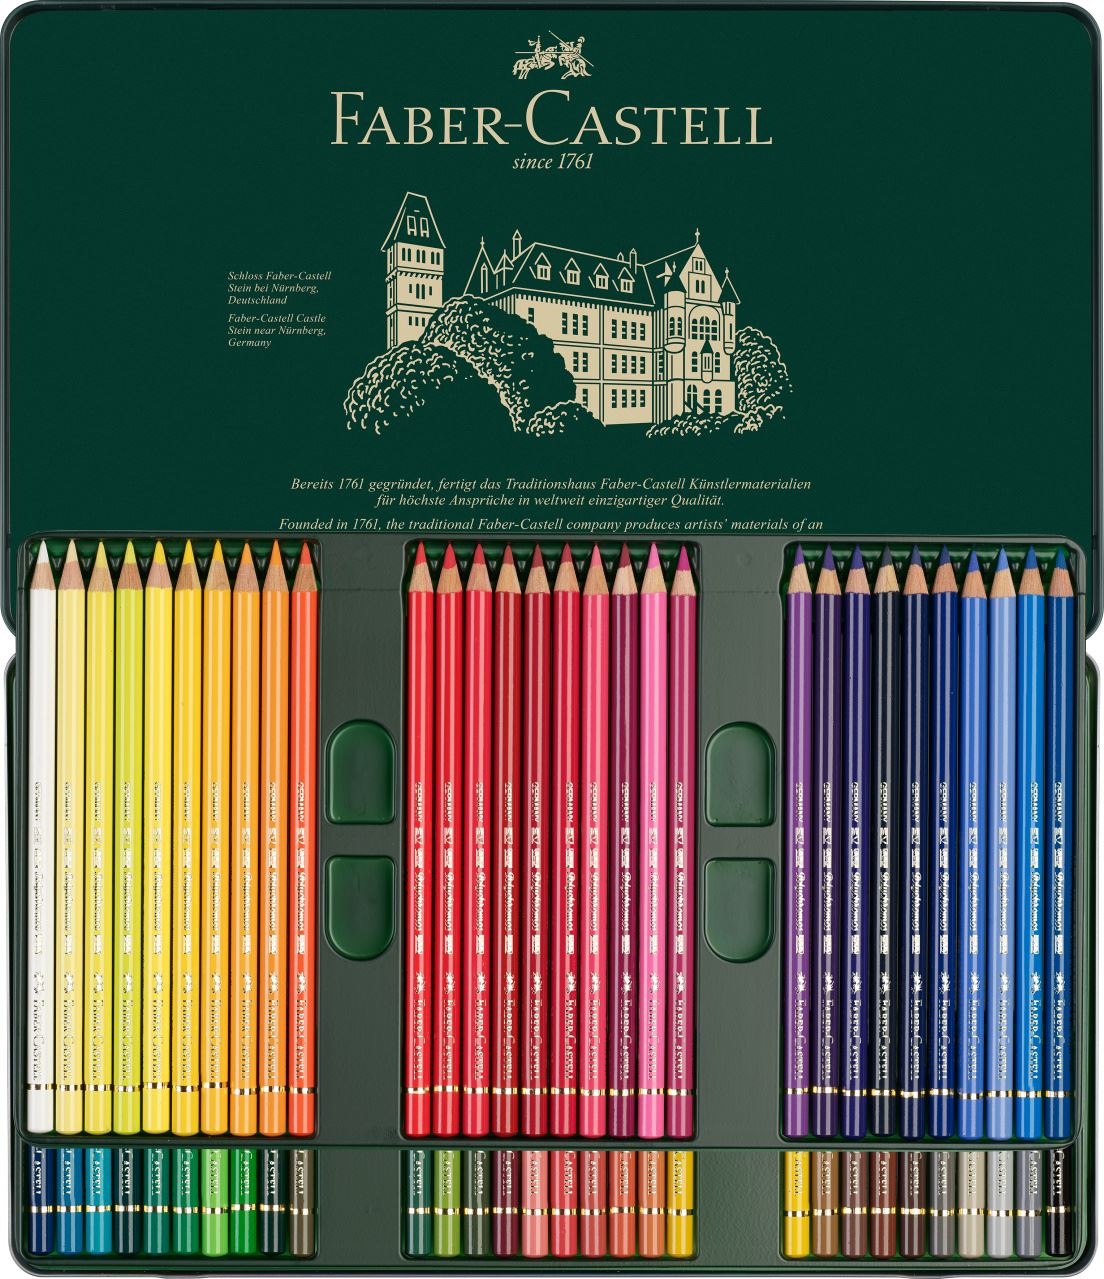 Faber-Castell - Estojo Metálico com 60 Lápis de Cor Permanentes Polychromos